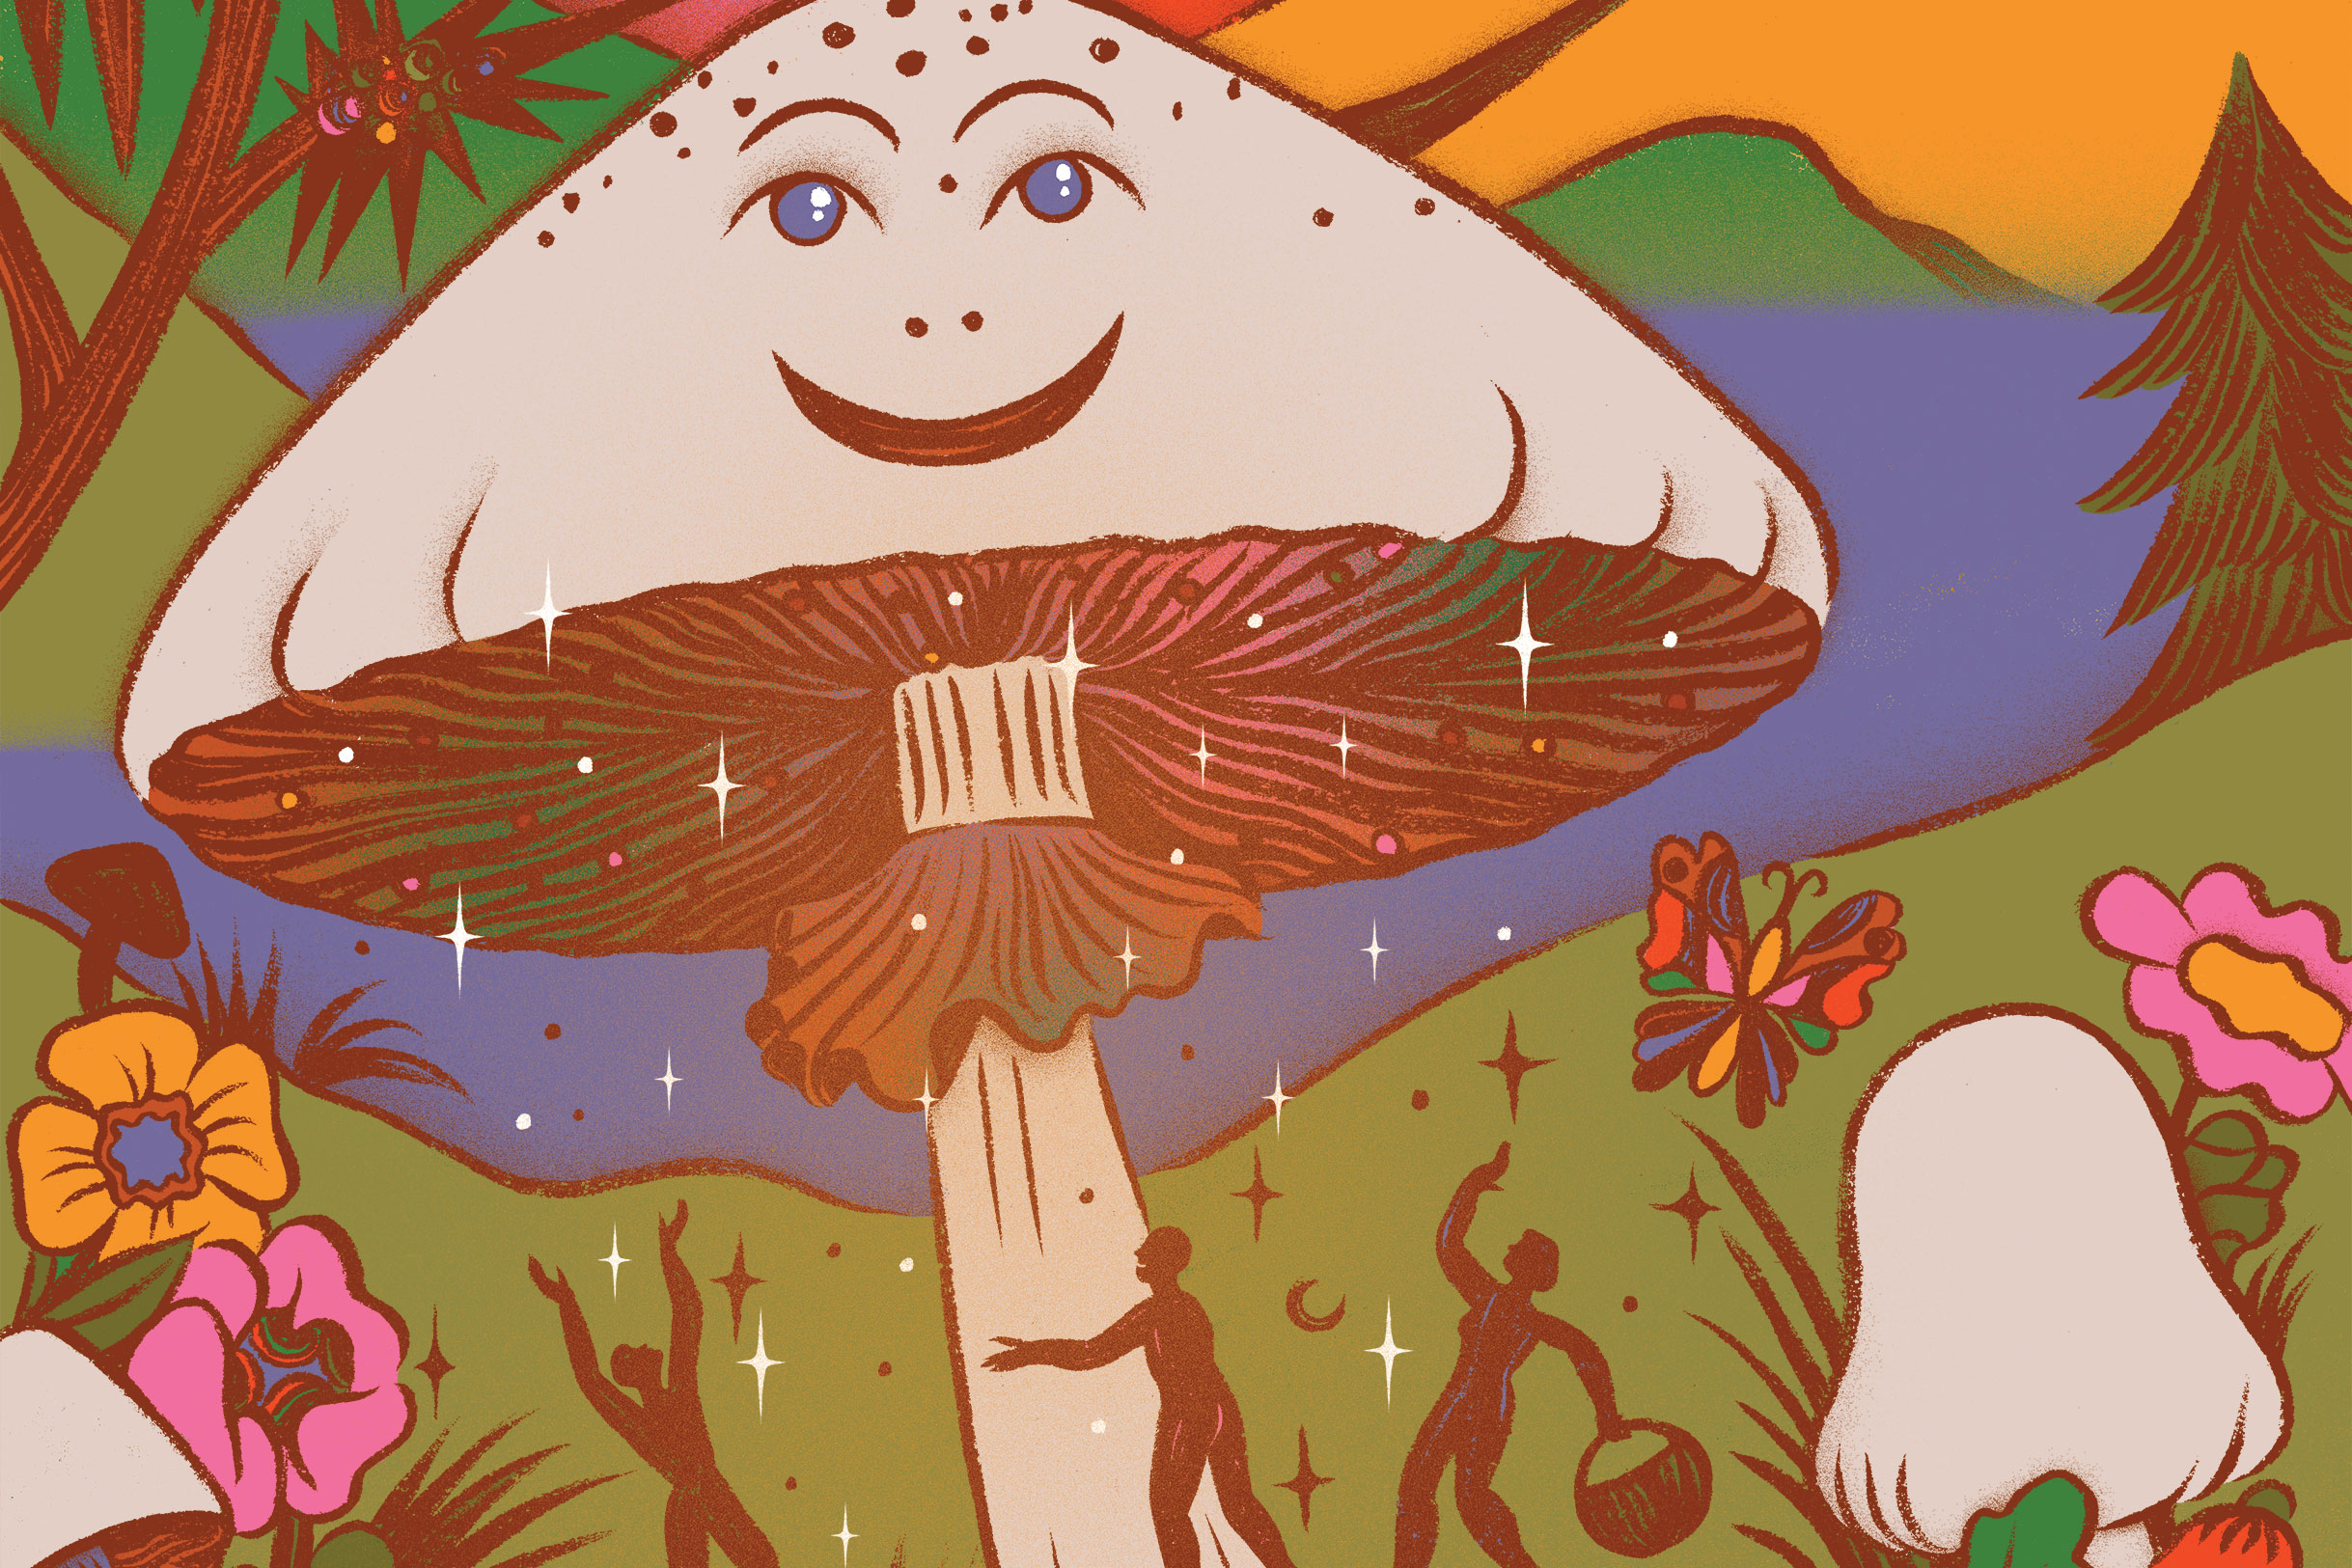 Magical Mushrooms Coloring book for Women: Mushroom houses(Magical